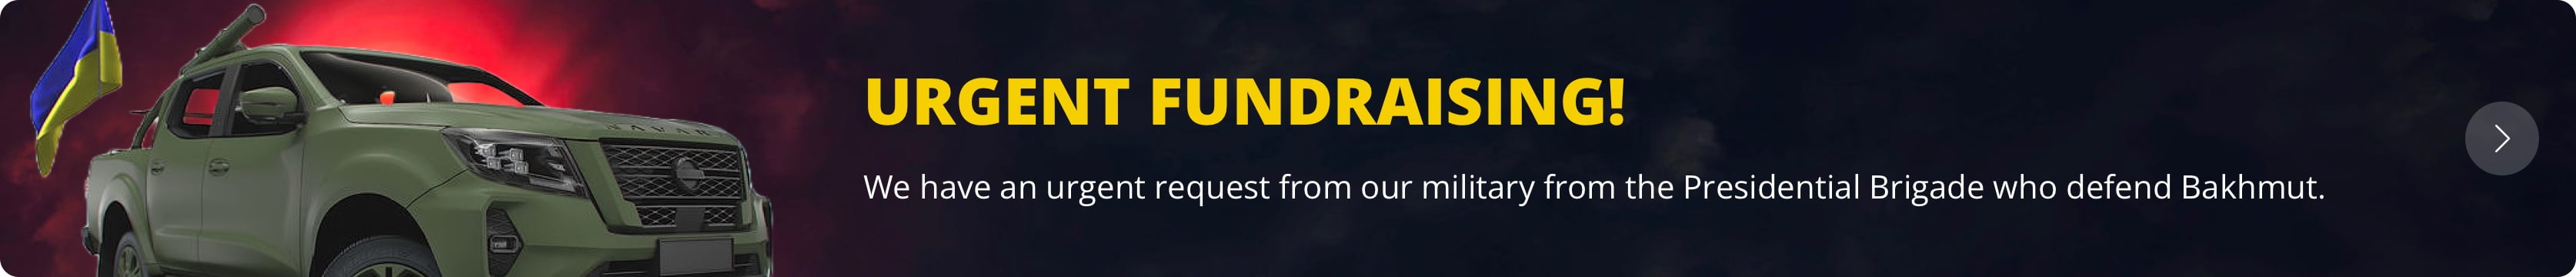 Urgent Fundraising!